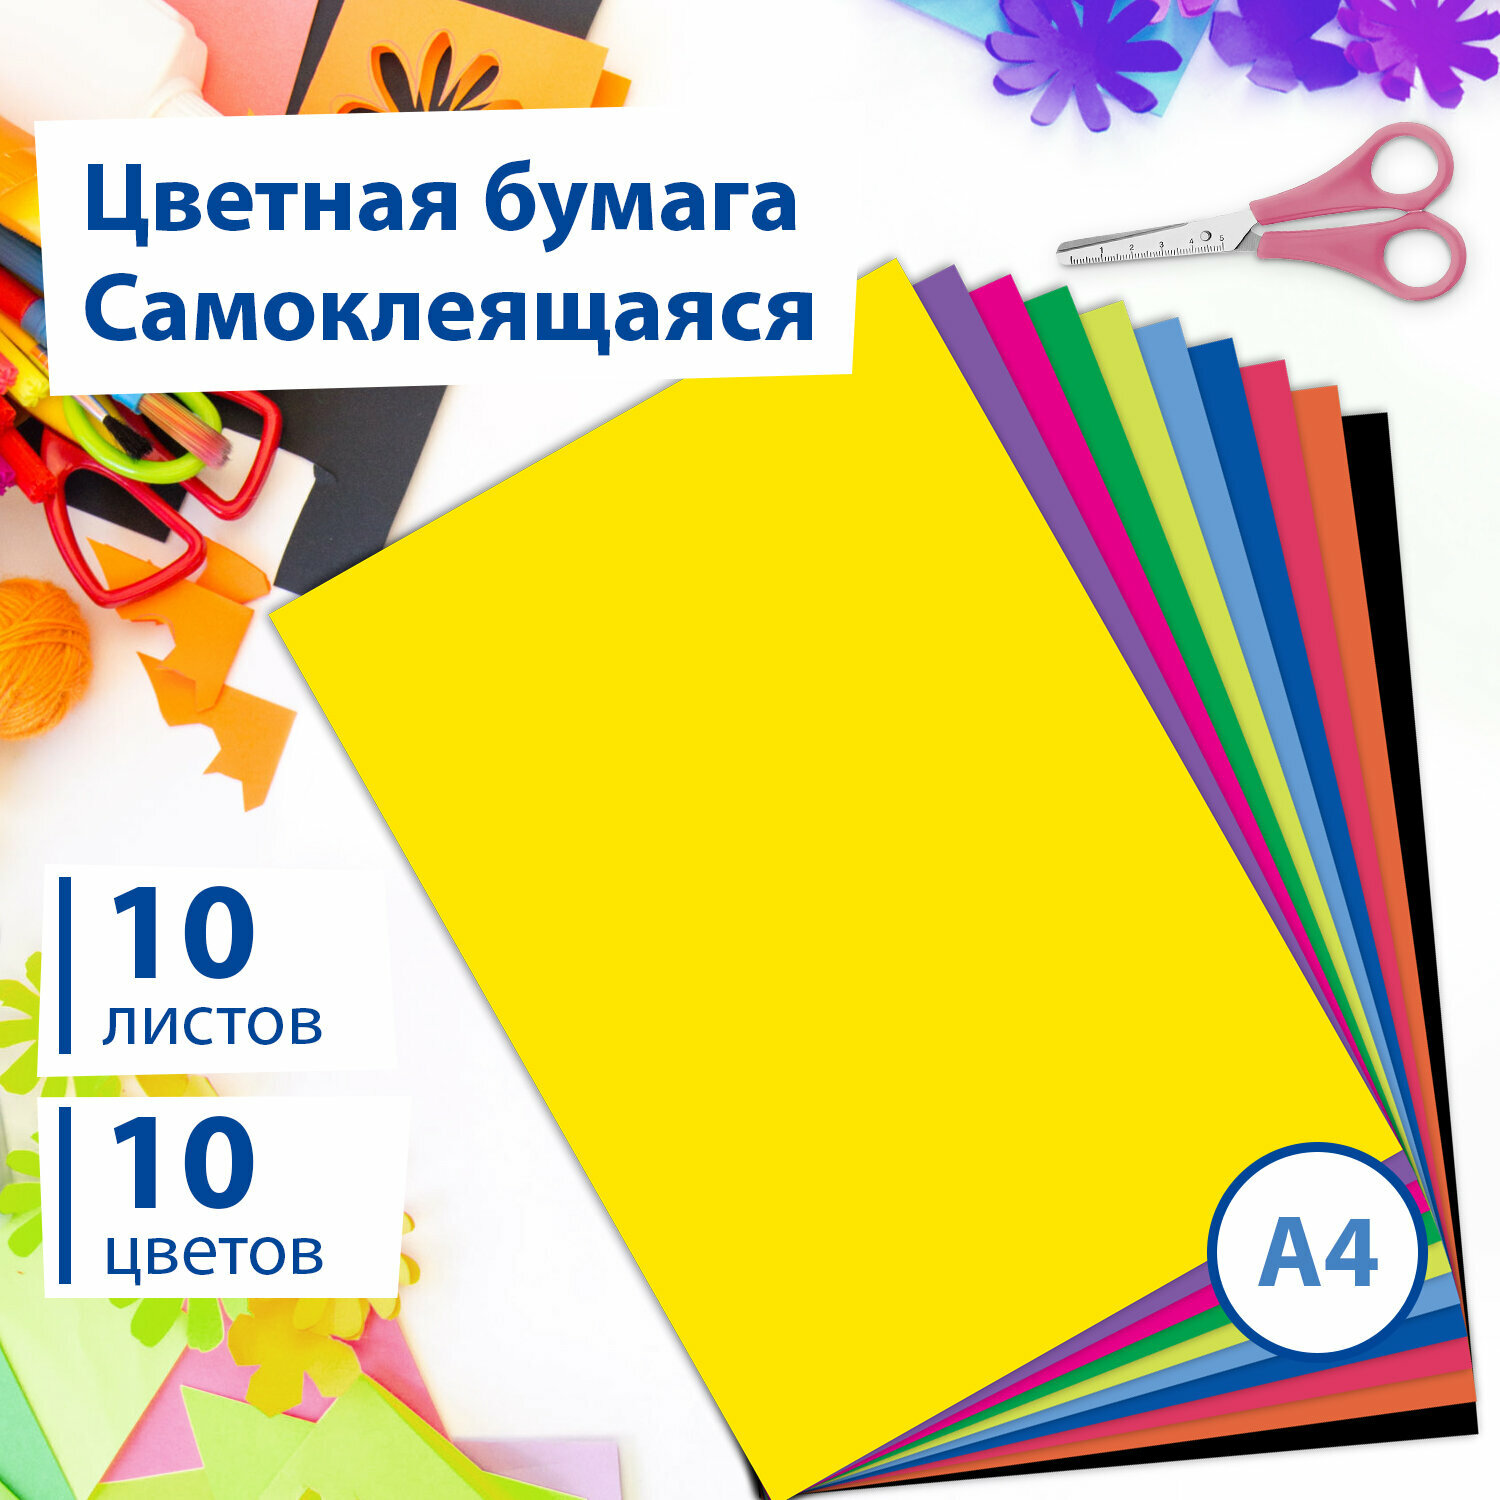 Цветная мелованная самоклеящаяся бумага формата А4 для творчества/оформления, набор 10 листов, 10 цветов, 80г/м2, Brauberg, 124721